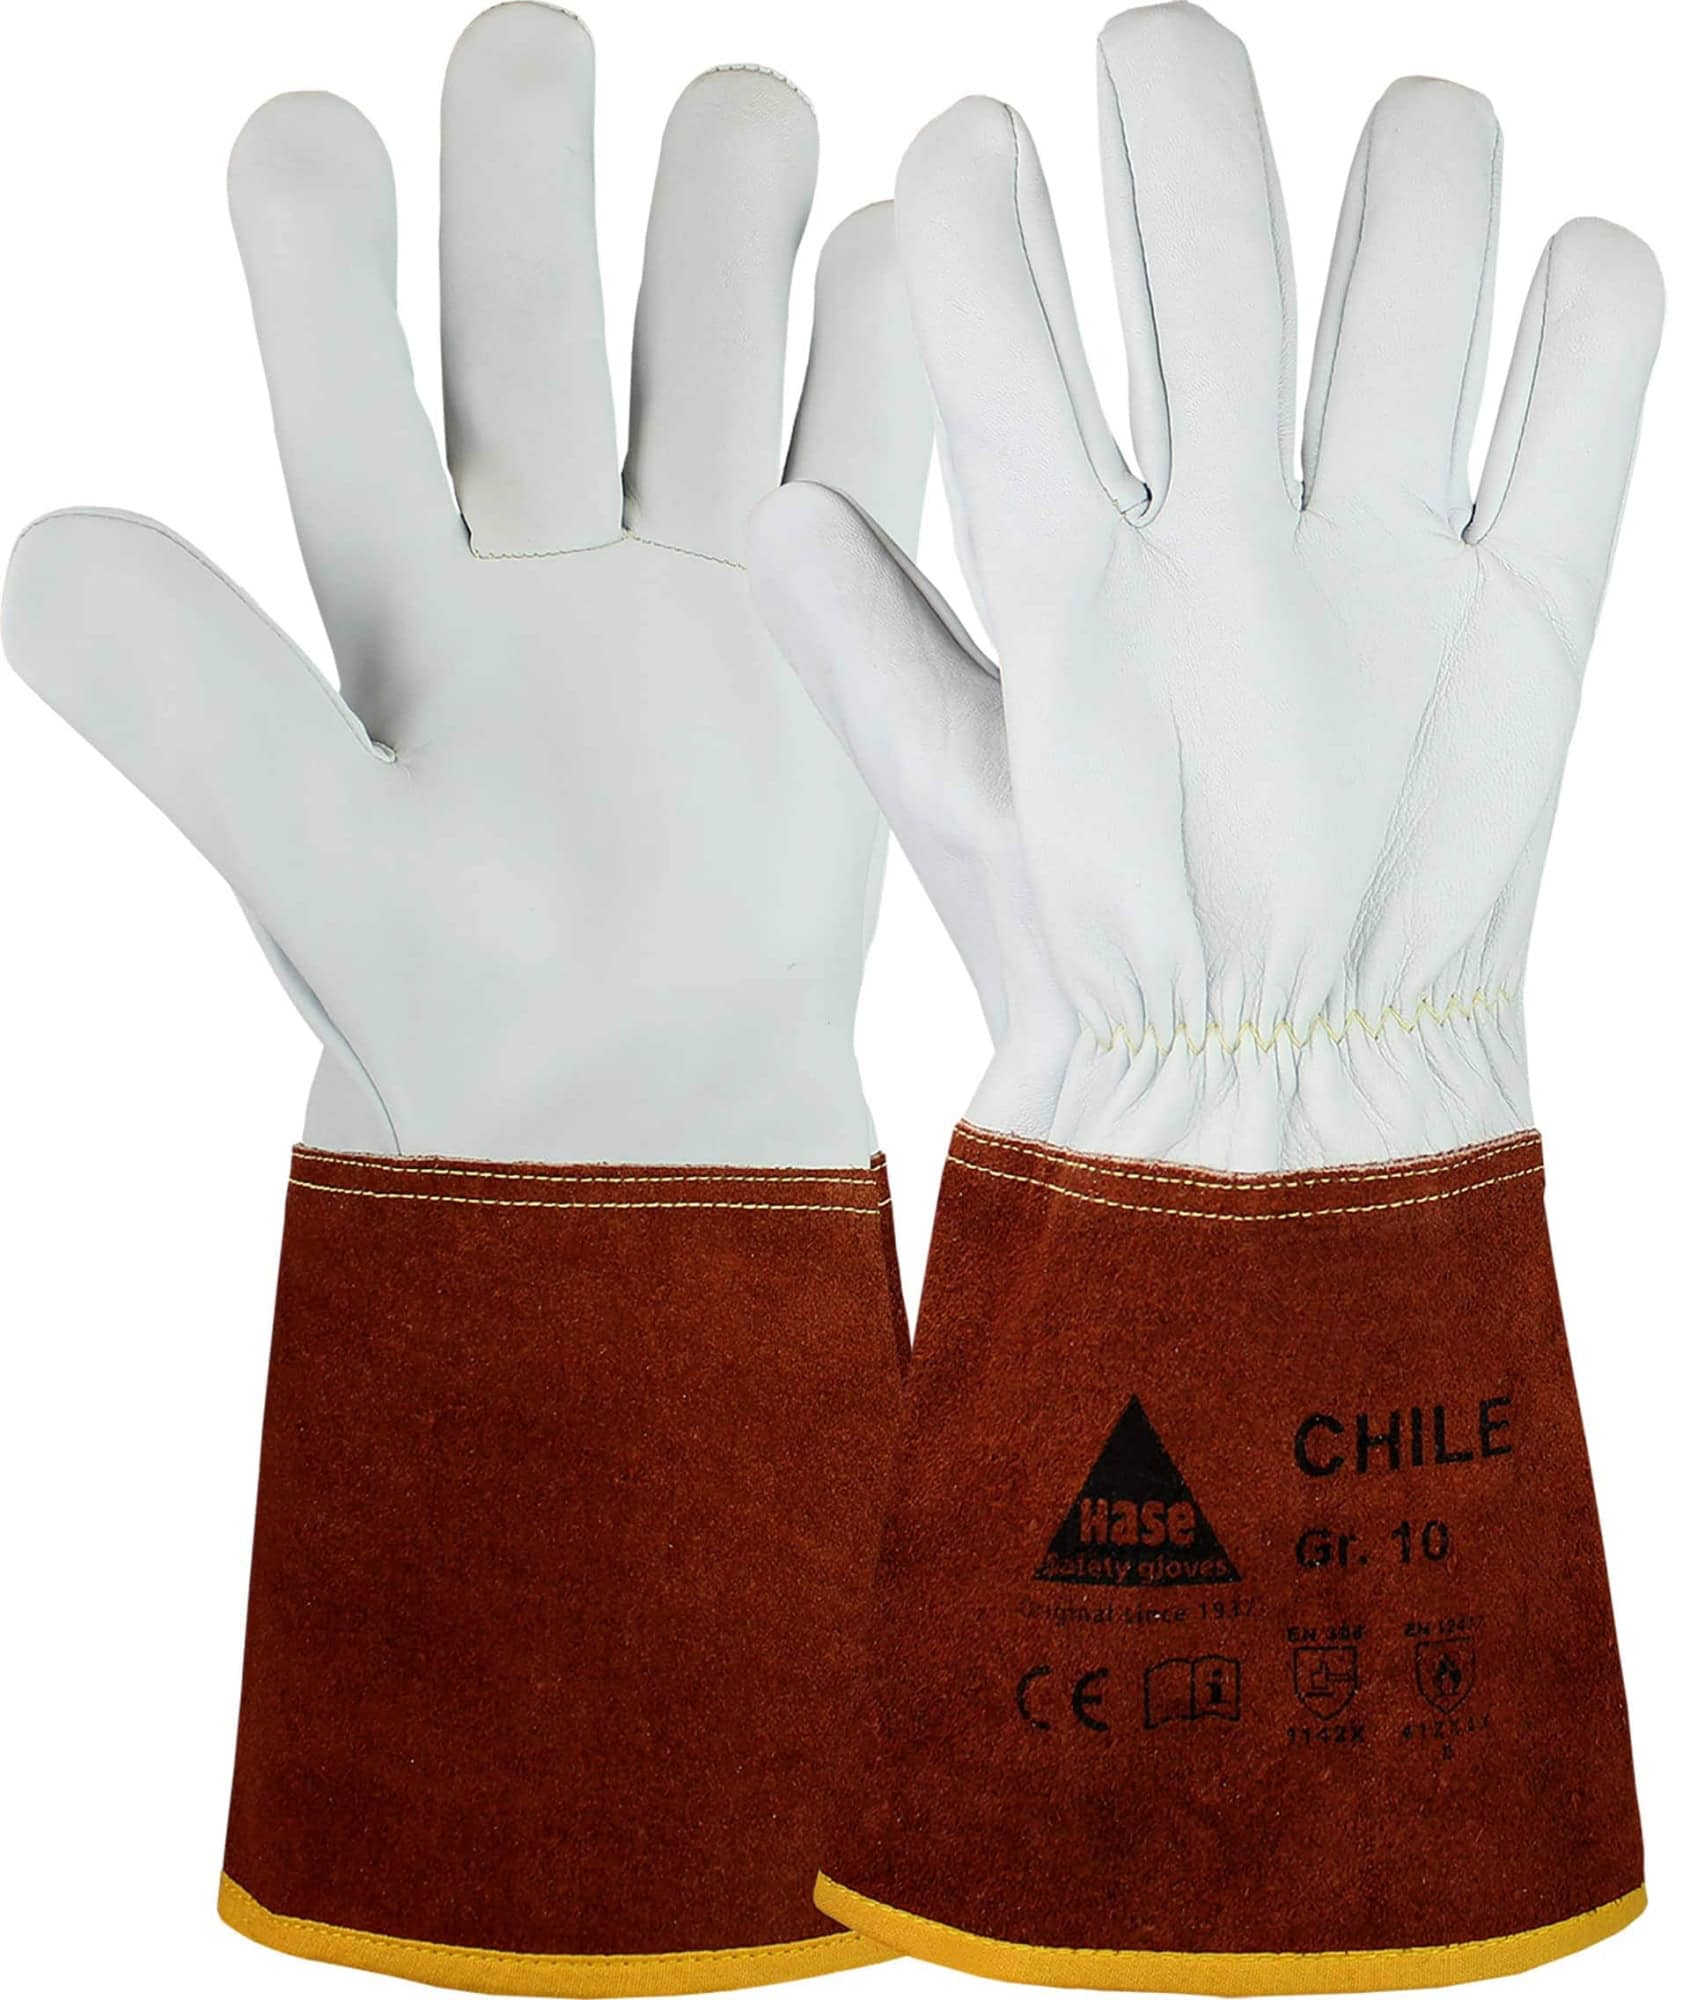 Hase Safety Gloves® CHILE 403840-8, Größe 8, Typ B, Kat. II, Natur/Dunkelbraun, Schweißerhandschuh für leichte Schweißarbeiten